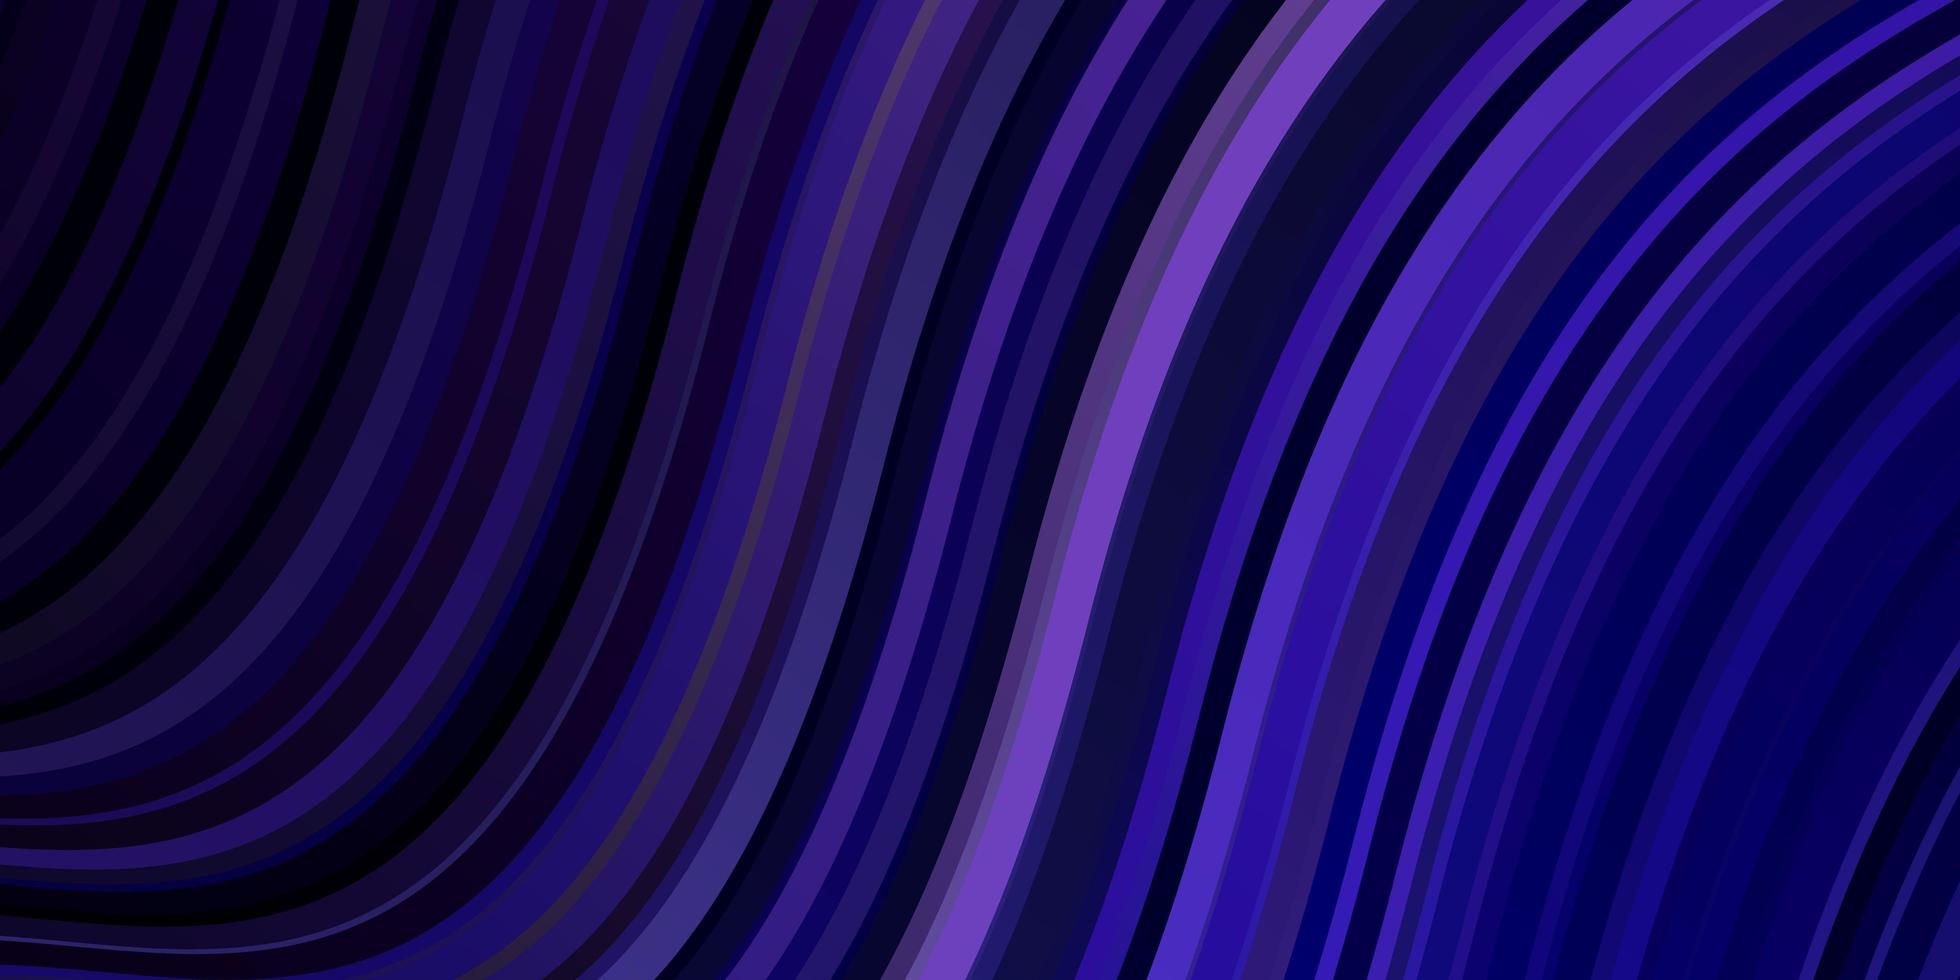 Telón de fondo de vector púrpura oscuro con líneas dobladas.